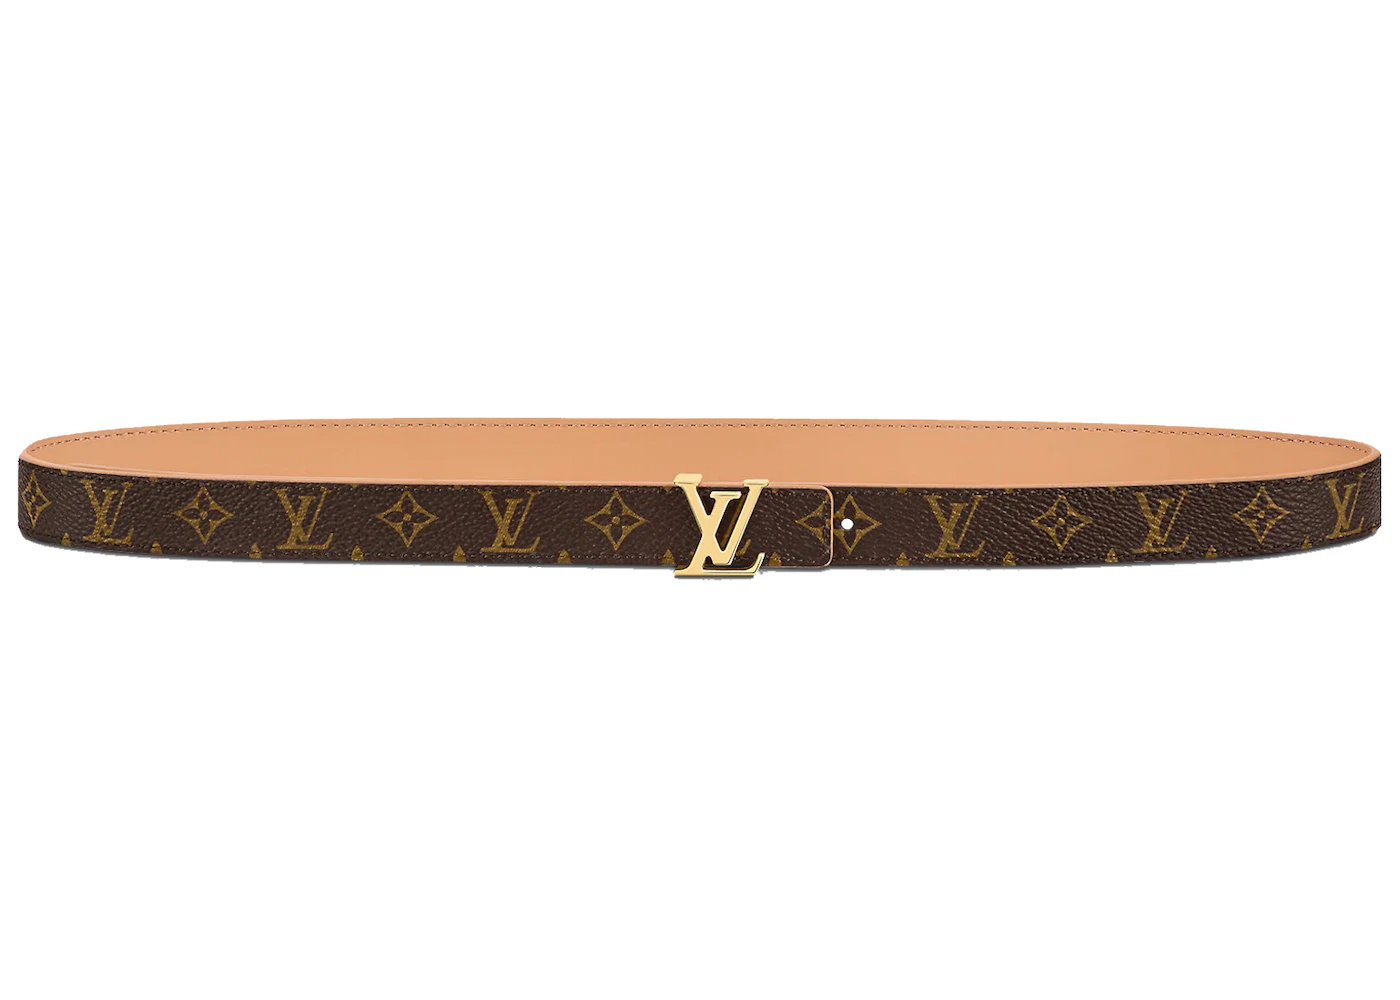 Women's Louis Vuitton Belts: Now At Usd $395.00+